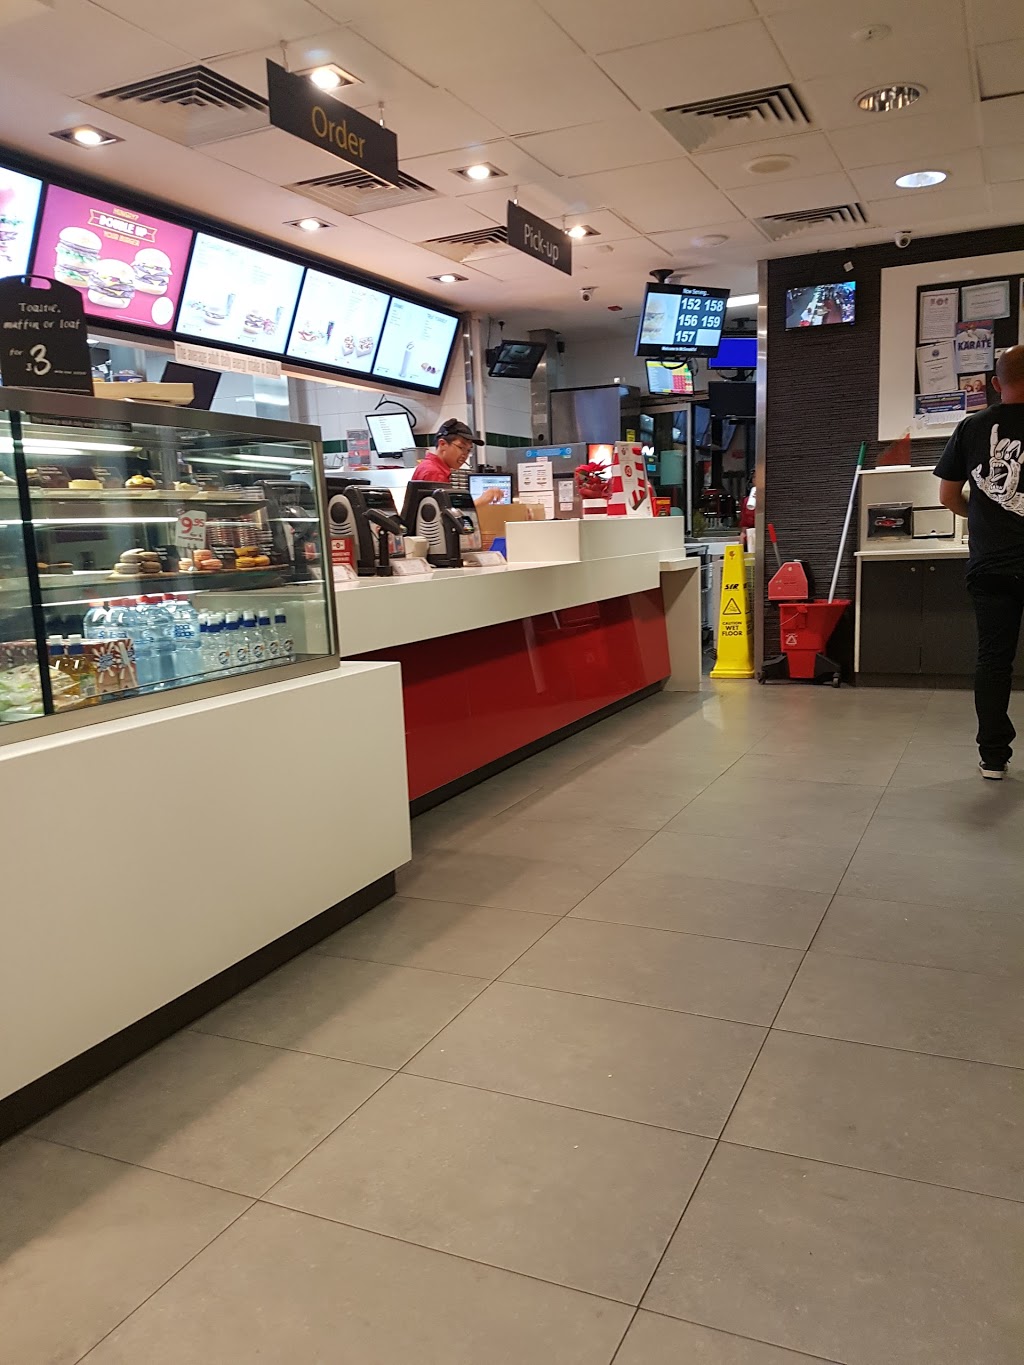 McDonalds Riverton | meal takeaway | 363 High Rd, Riverton WA 6155, Australia | 0893548279 OR +61 8 9354 8279